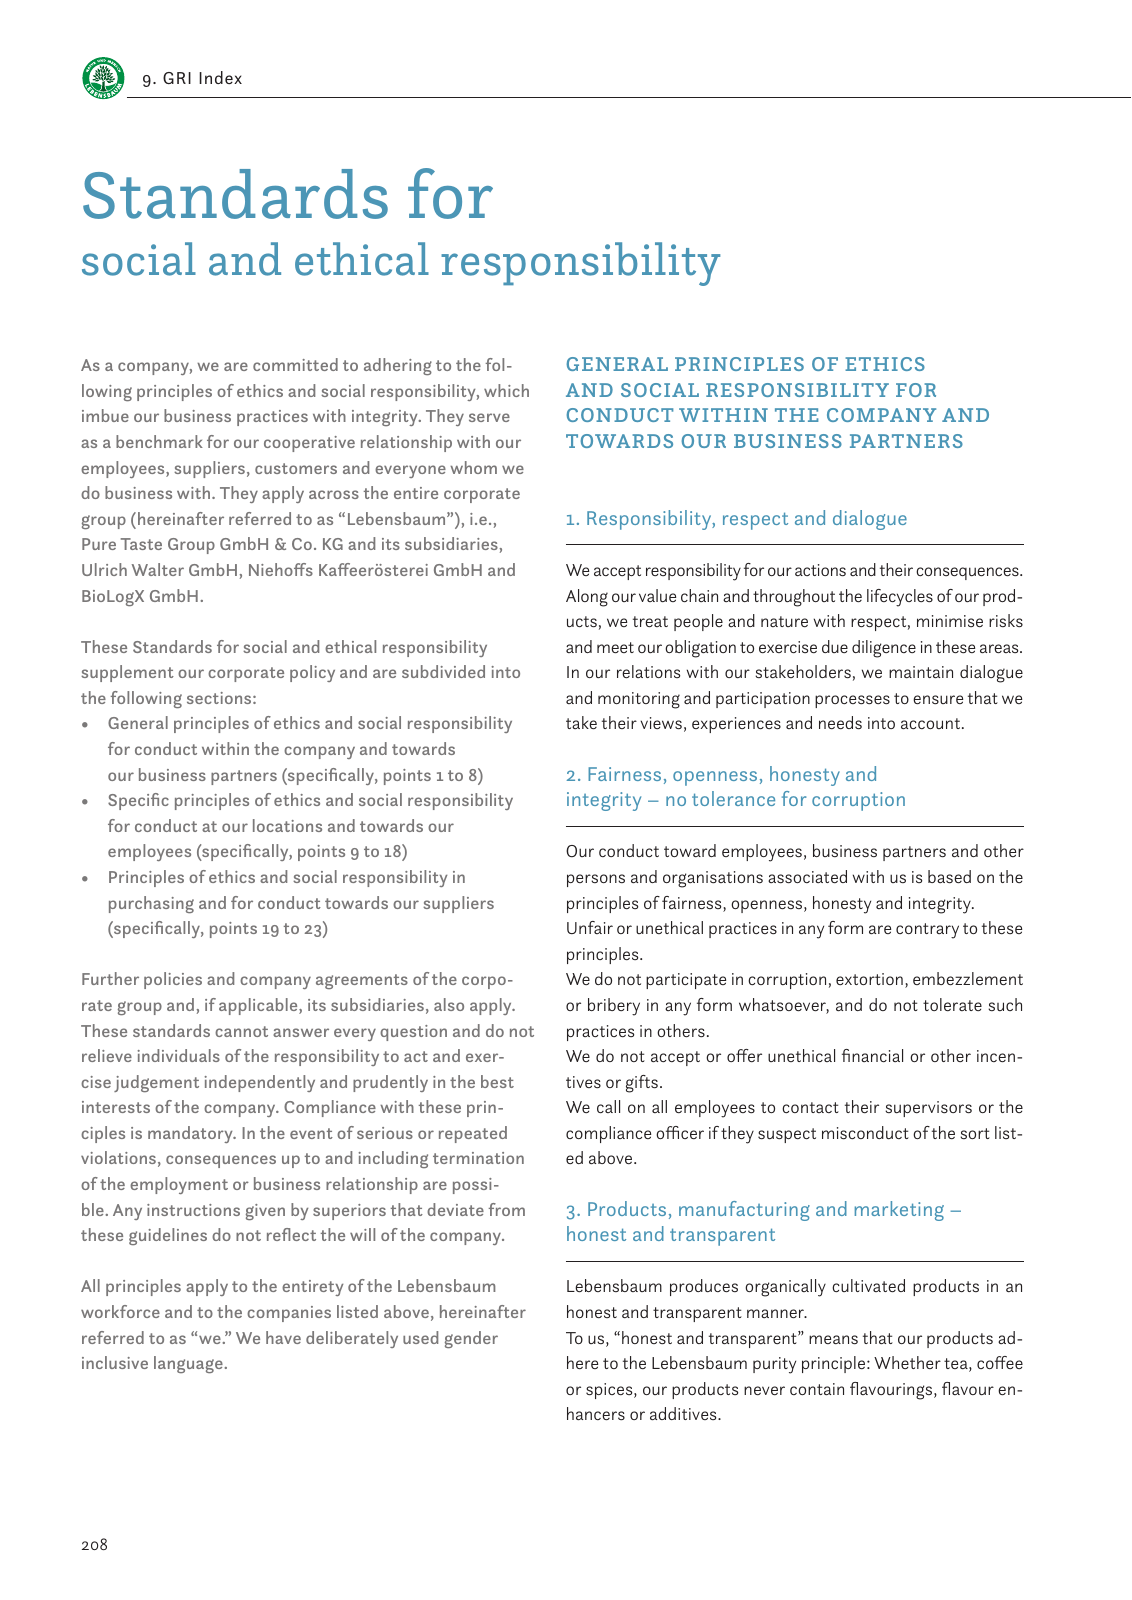 Vorschau Sustainability Report 2019 Seite 210